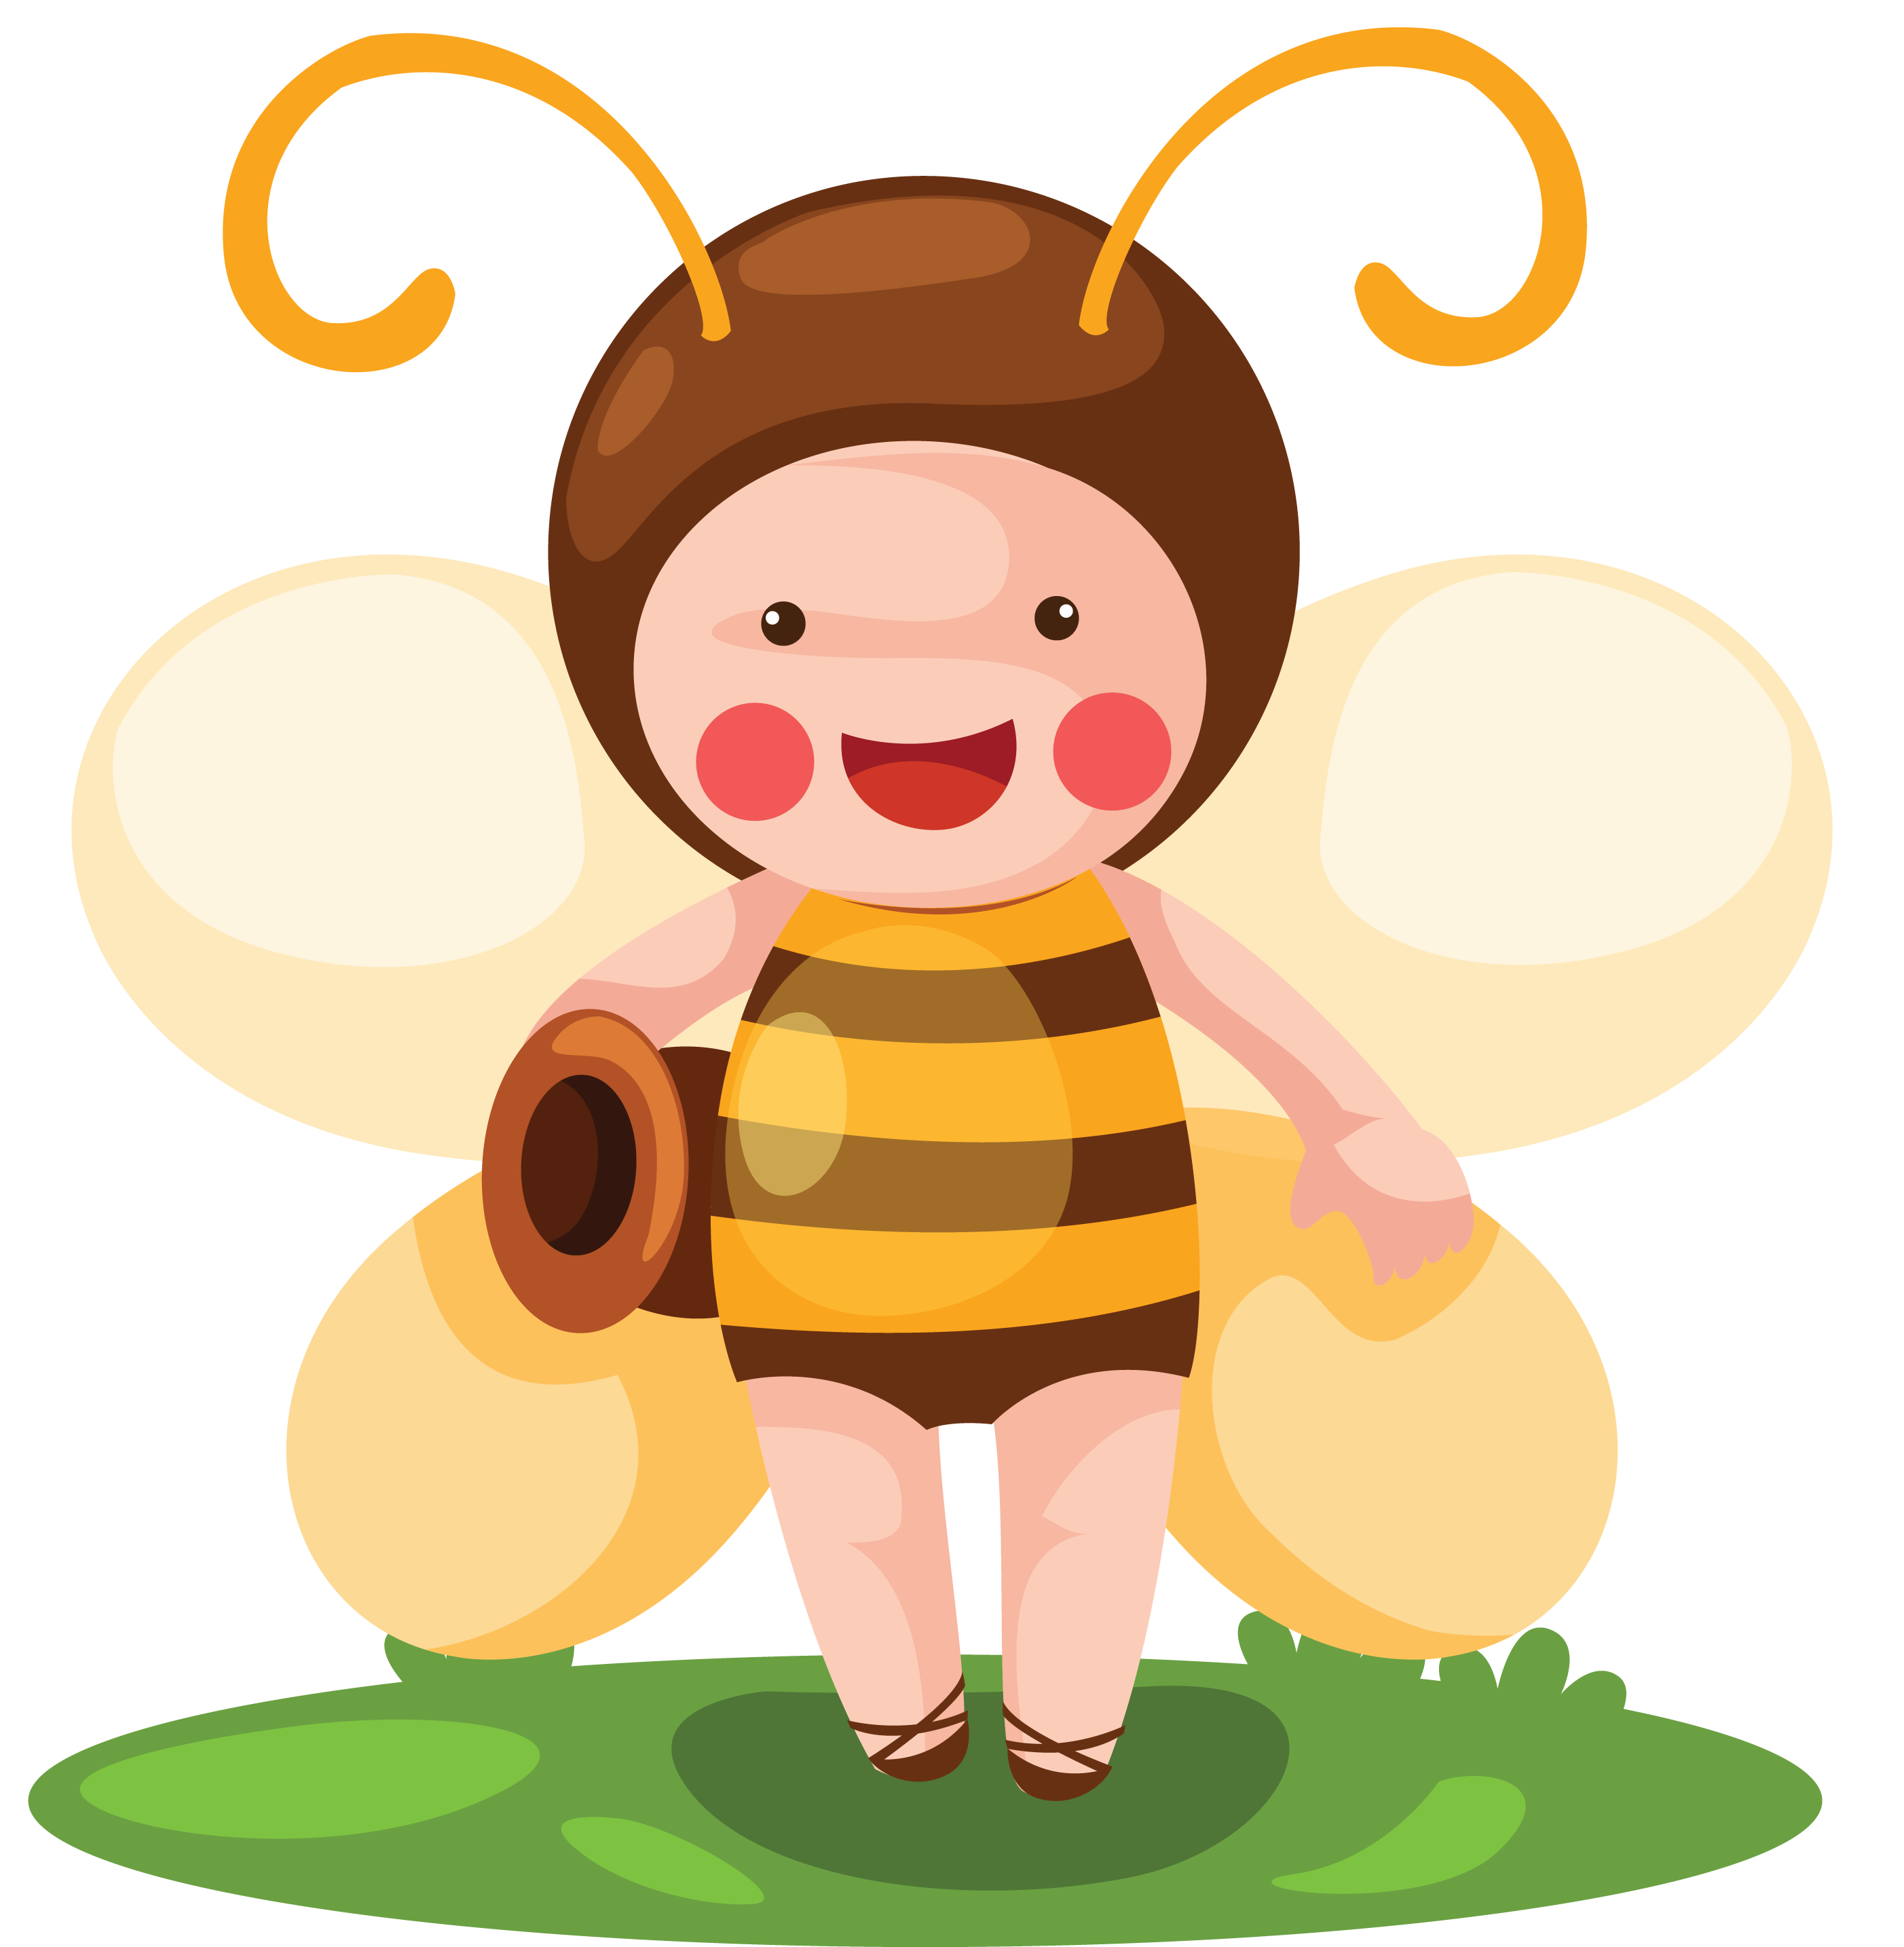 Пчела PNG